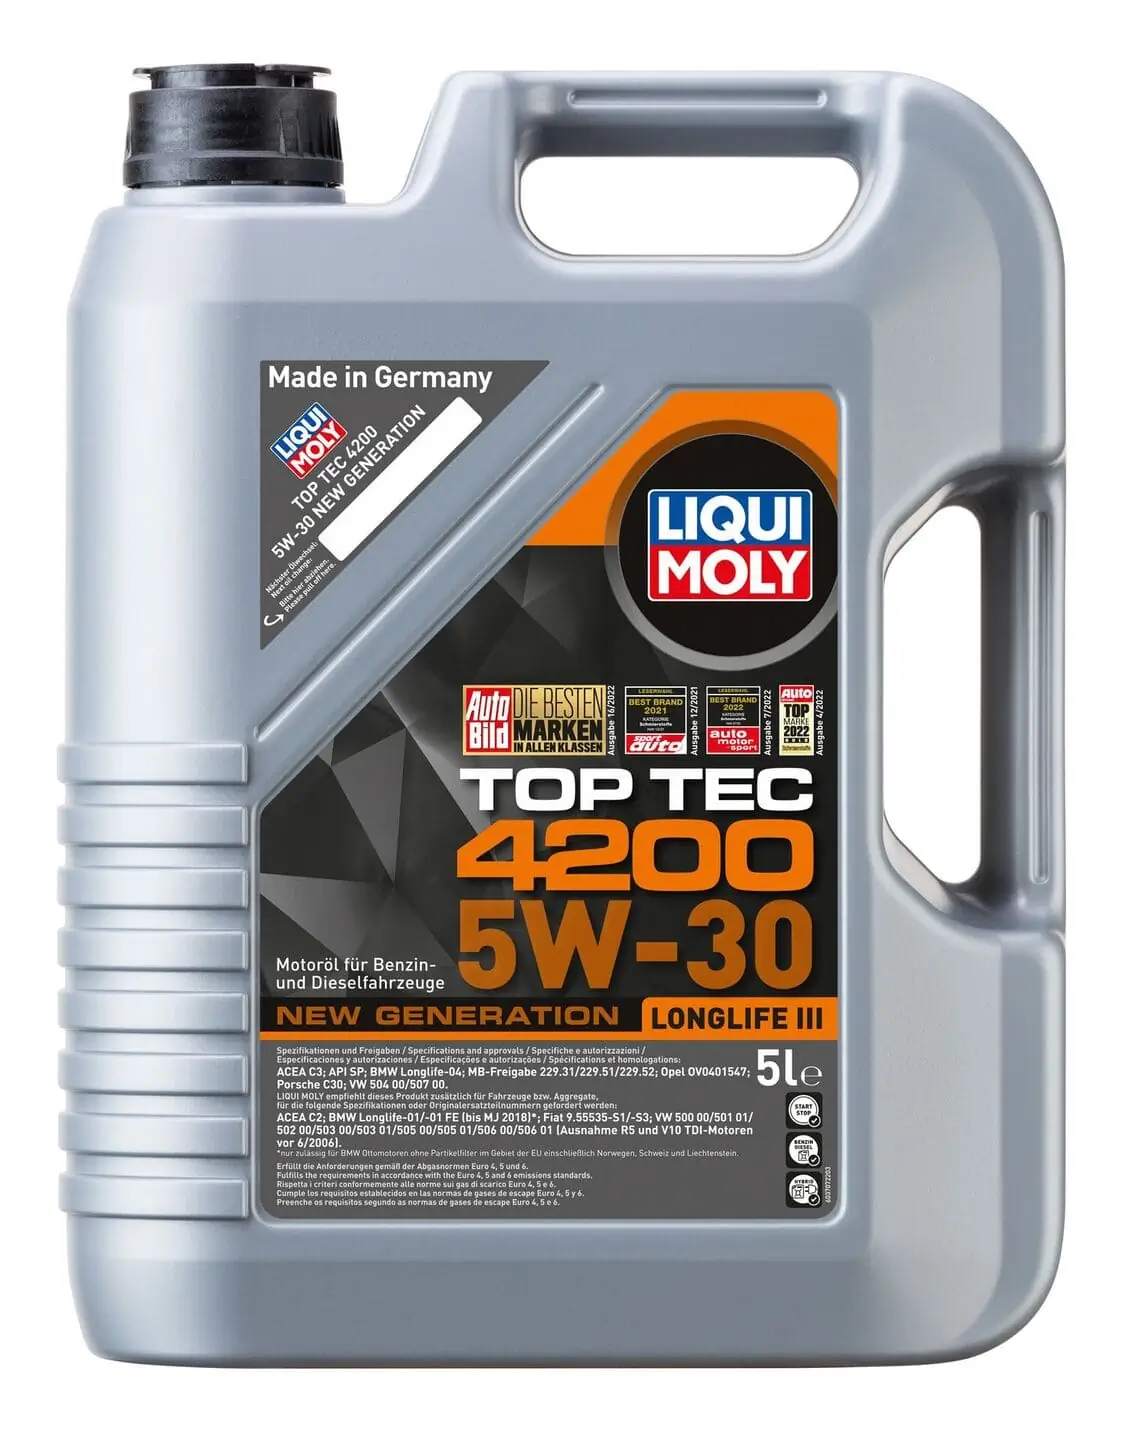 LIQUI MOLY TOP TEC 4200 5W-30 5L